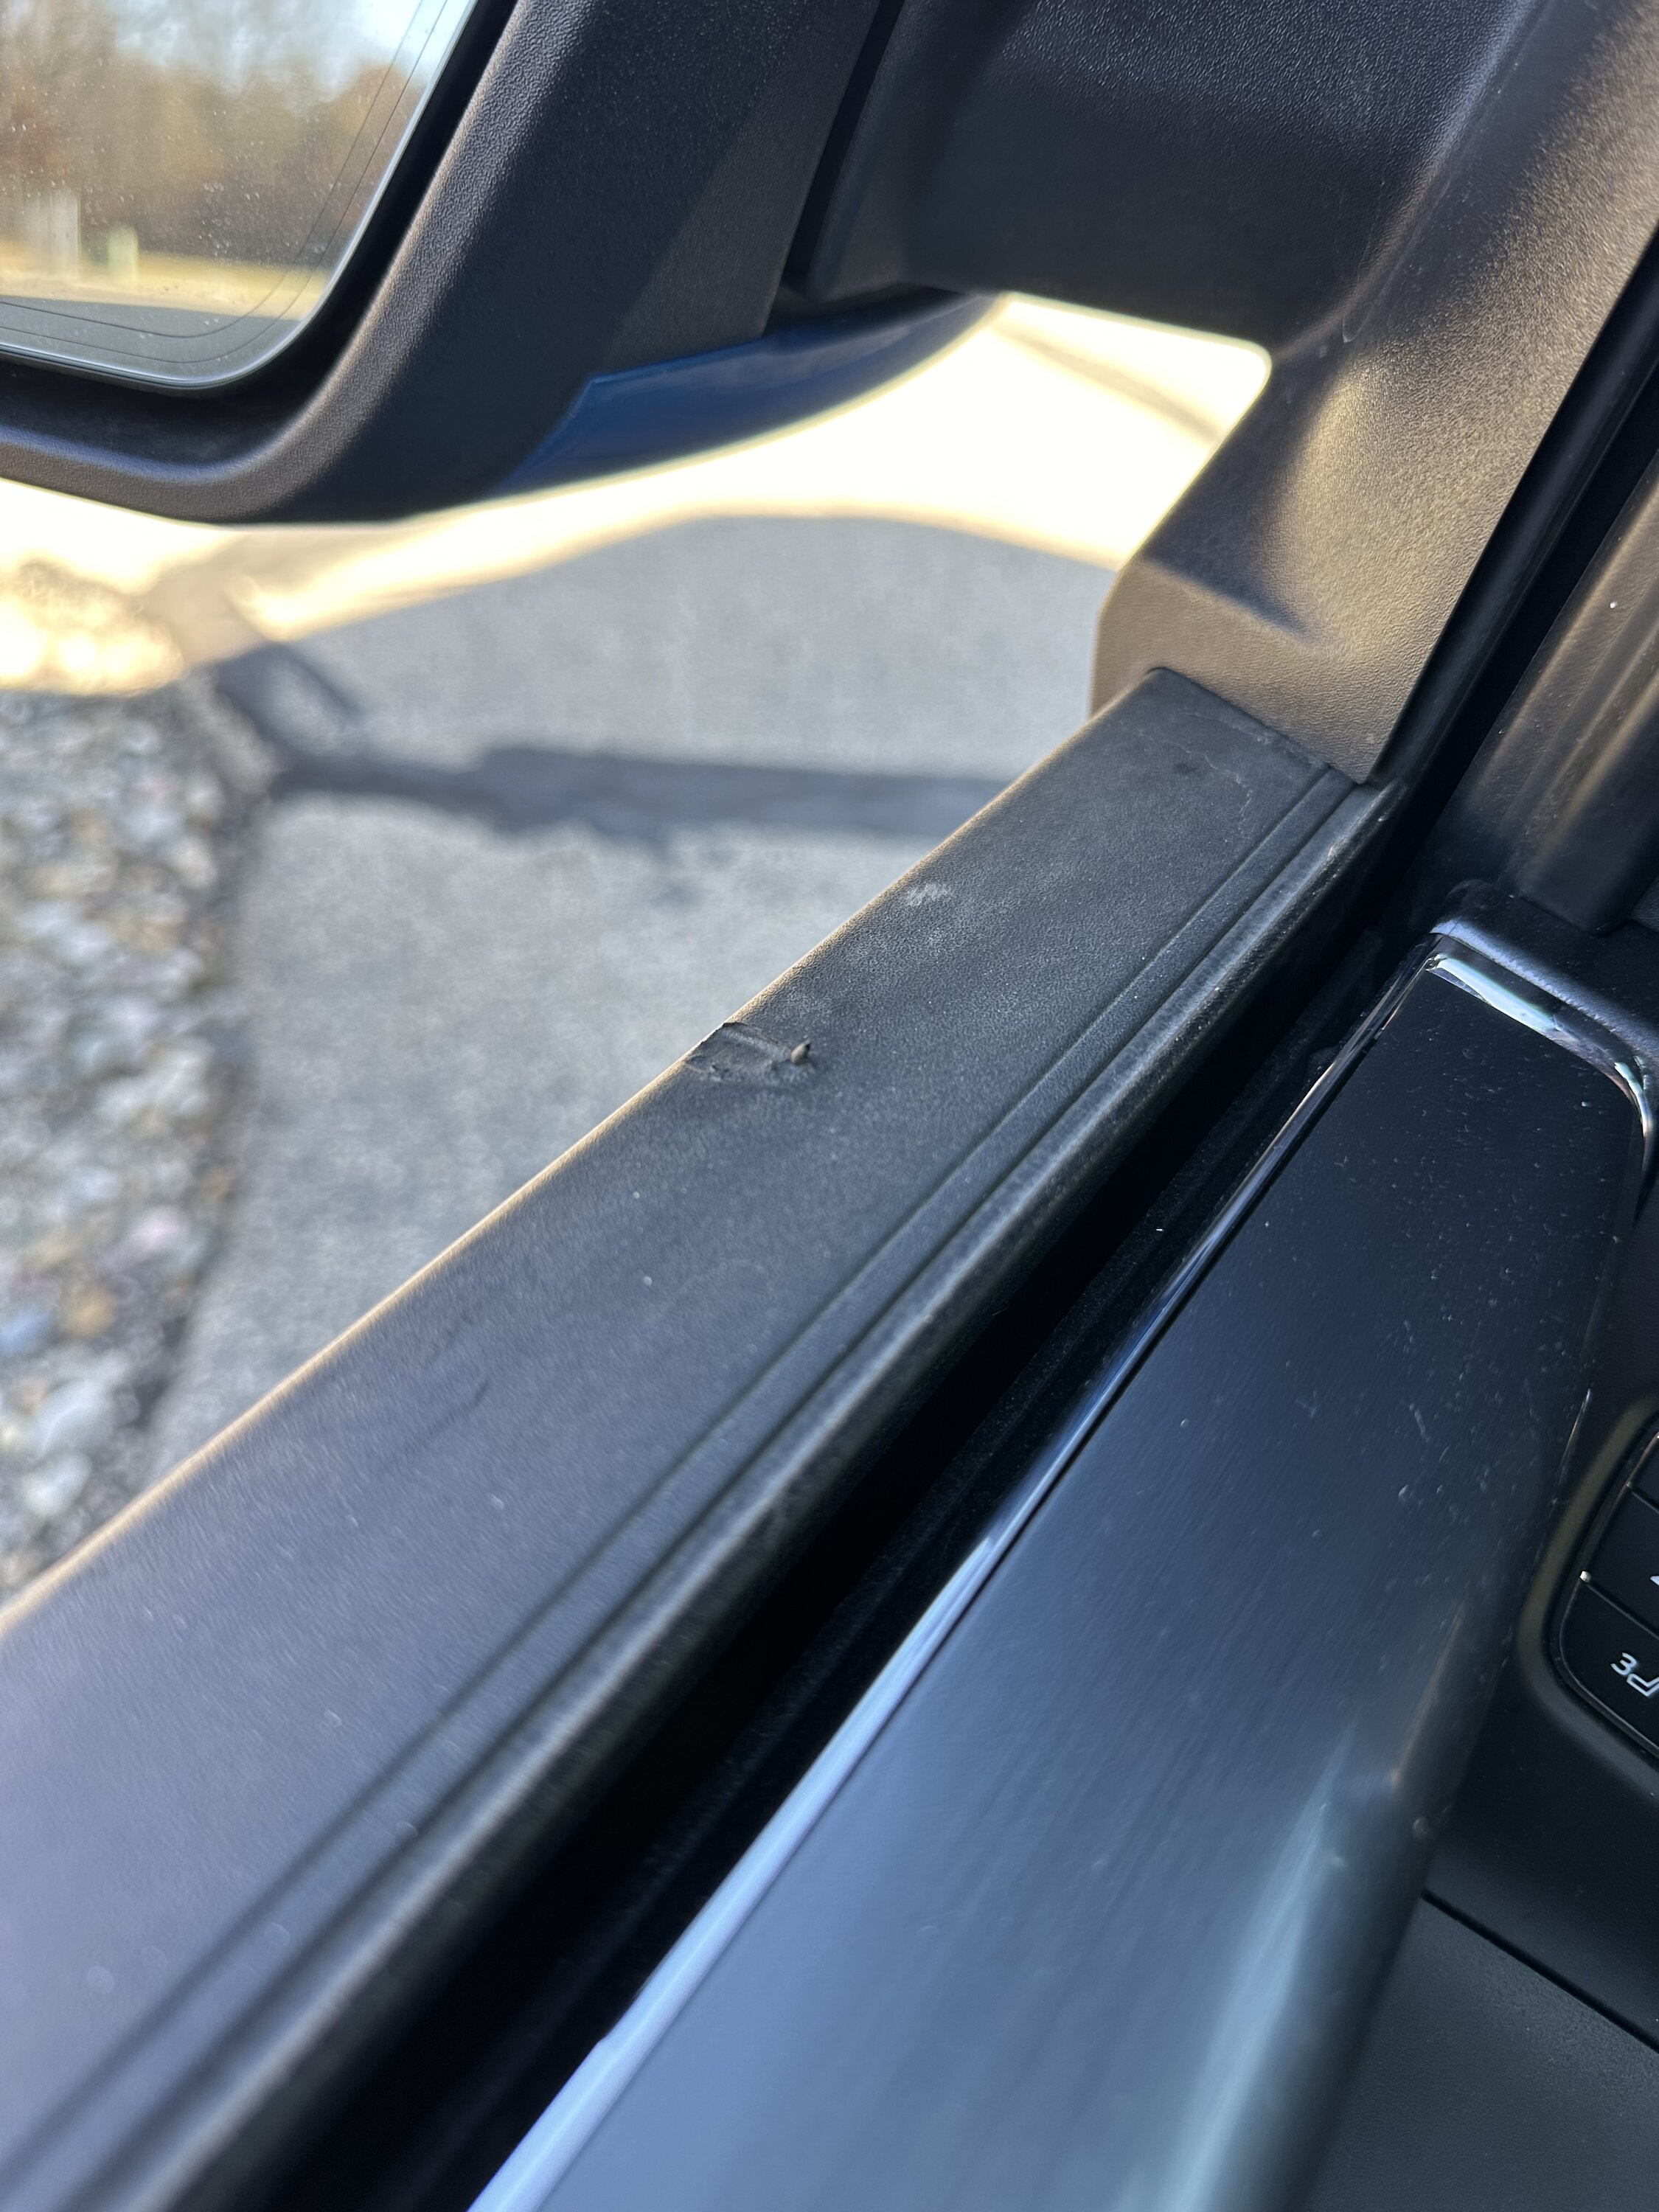 Ford F-150 Window Trim Damage IMG_8943